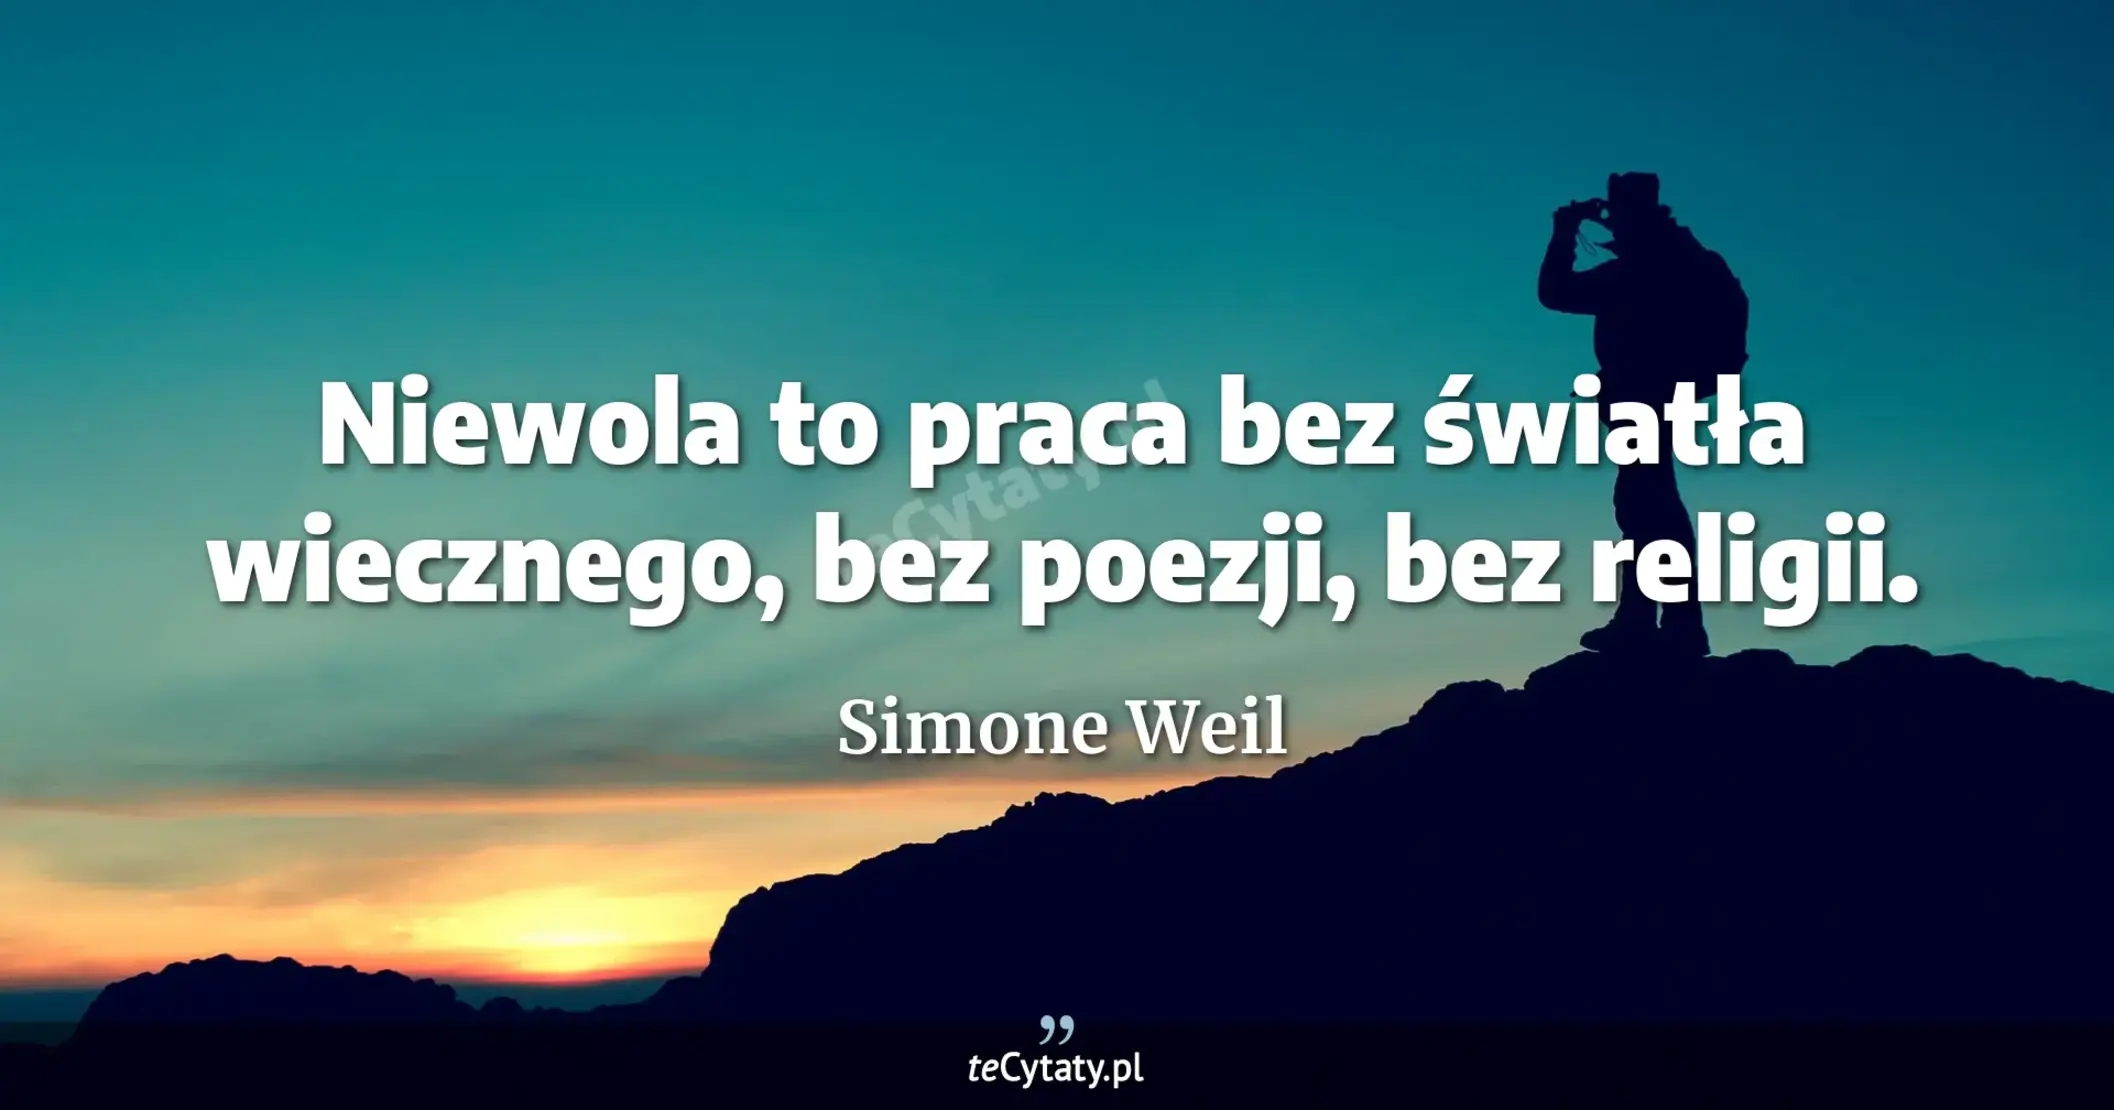 Niewola to praca bez światła wiecznego, bez poezji, bez religii. - Simone Weil